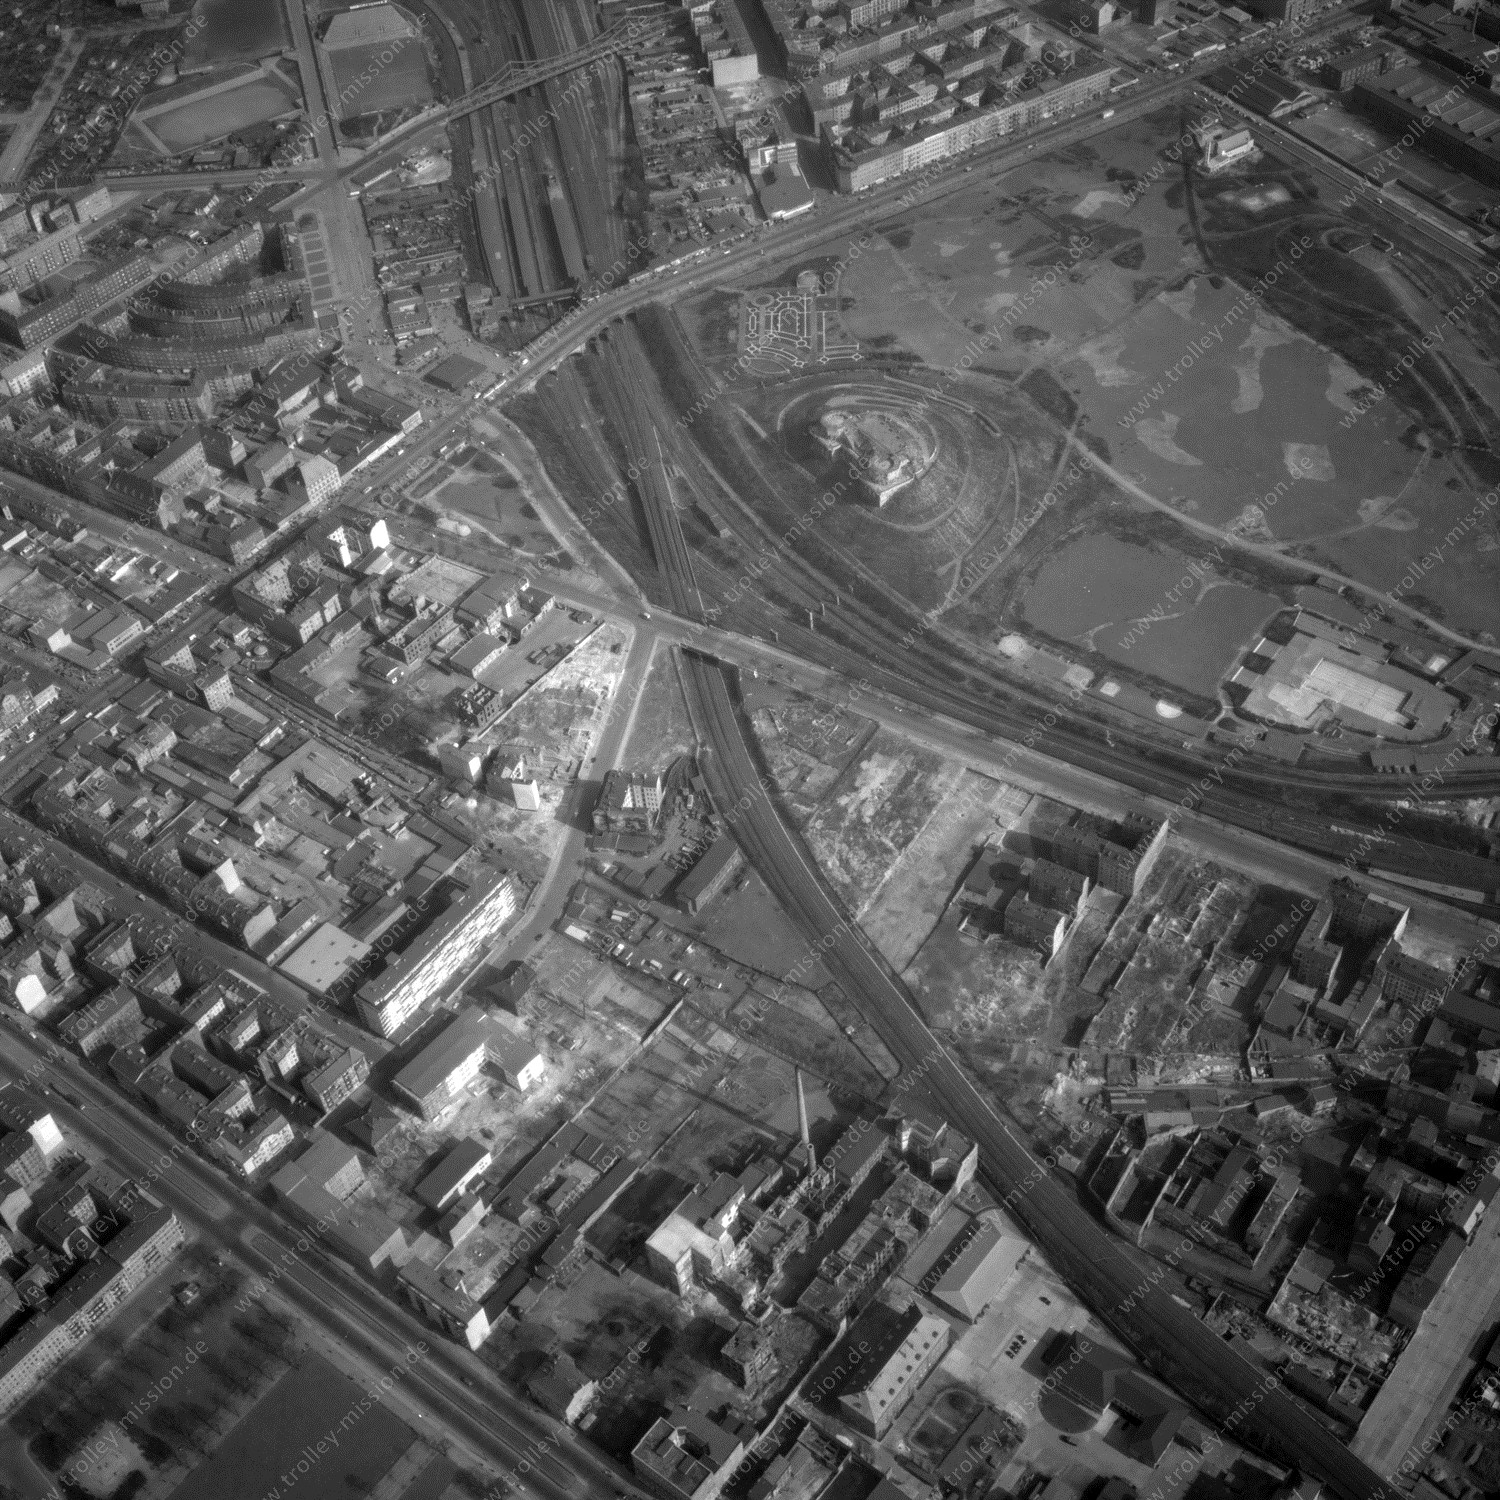 Alte Fotos und Luftbilder von Berlin - Luftbildaufnahme Nr. 10 - Historische Luftaufnahmen von West-Berlin aus dem Jahr 1954 - Flugstrecke Romeo